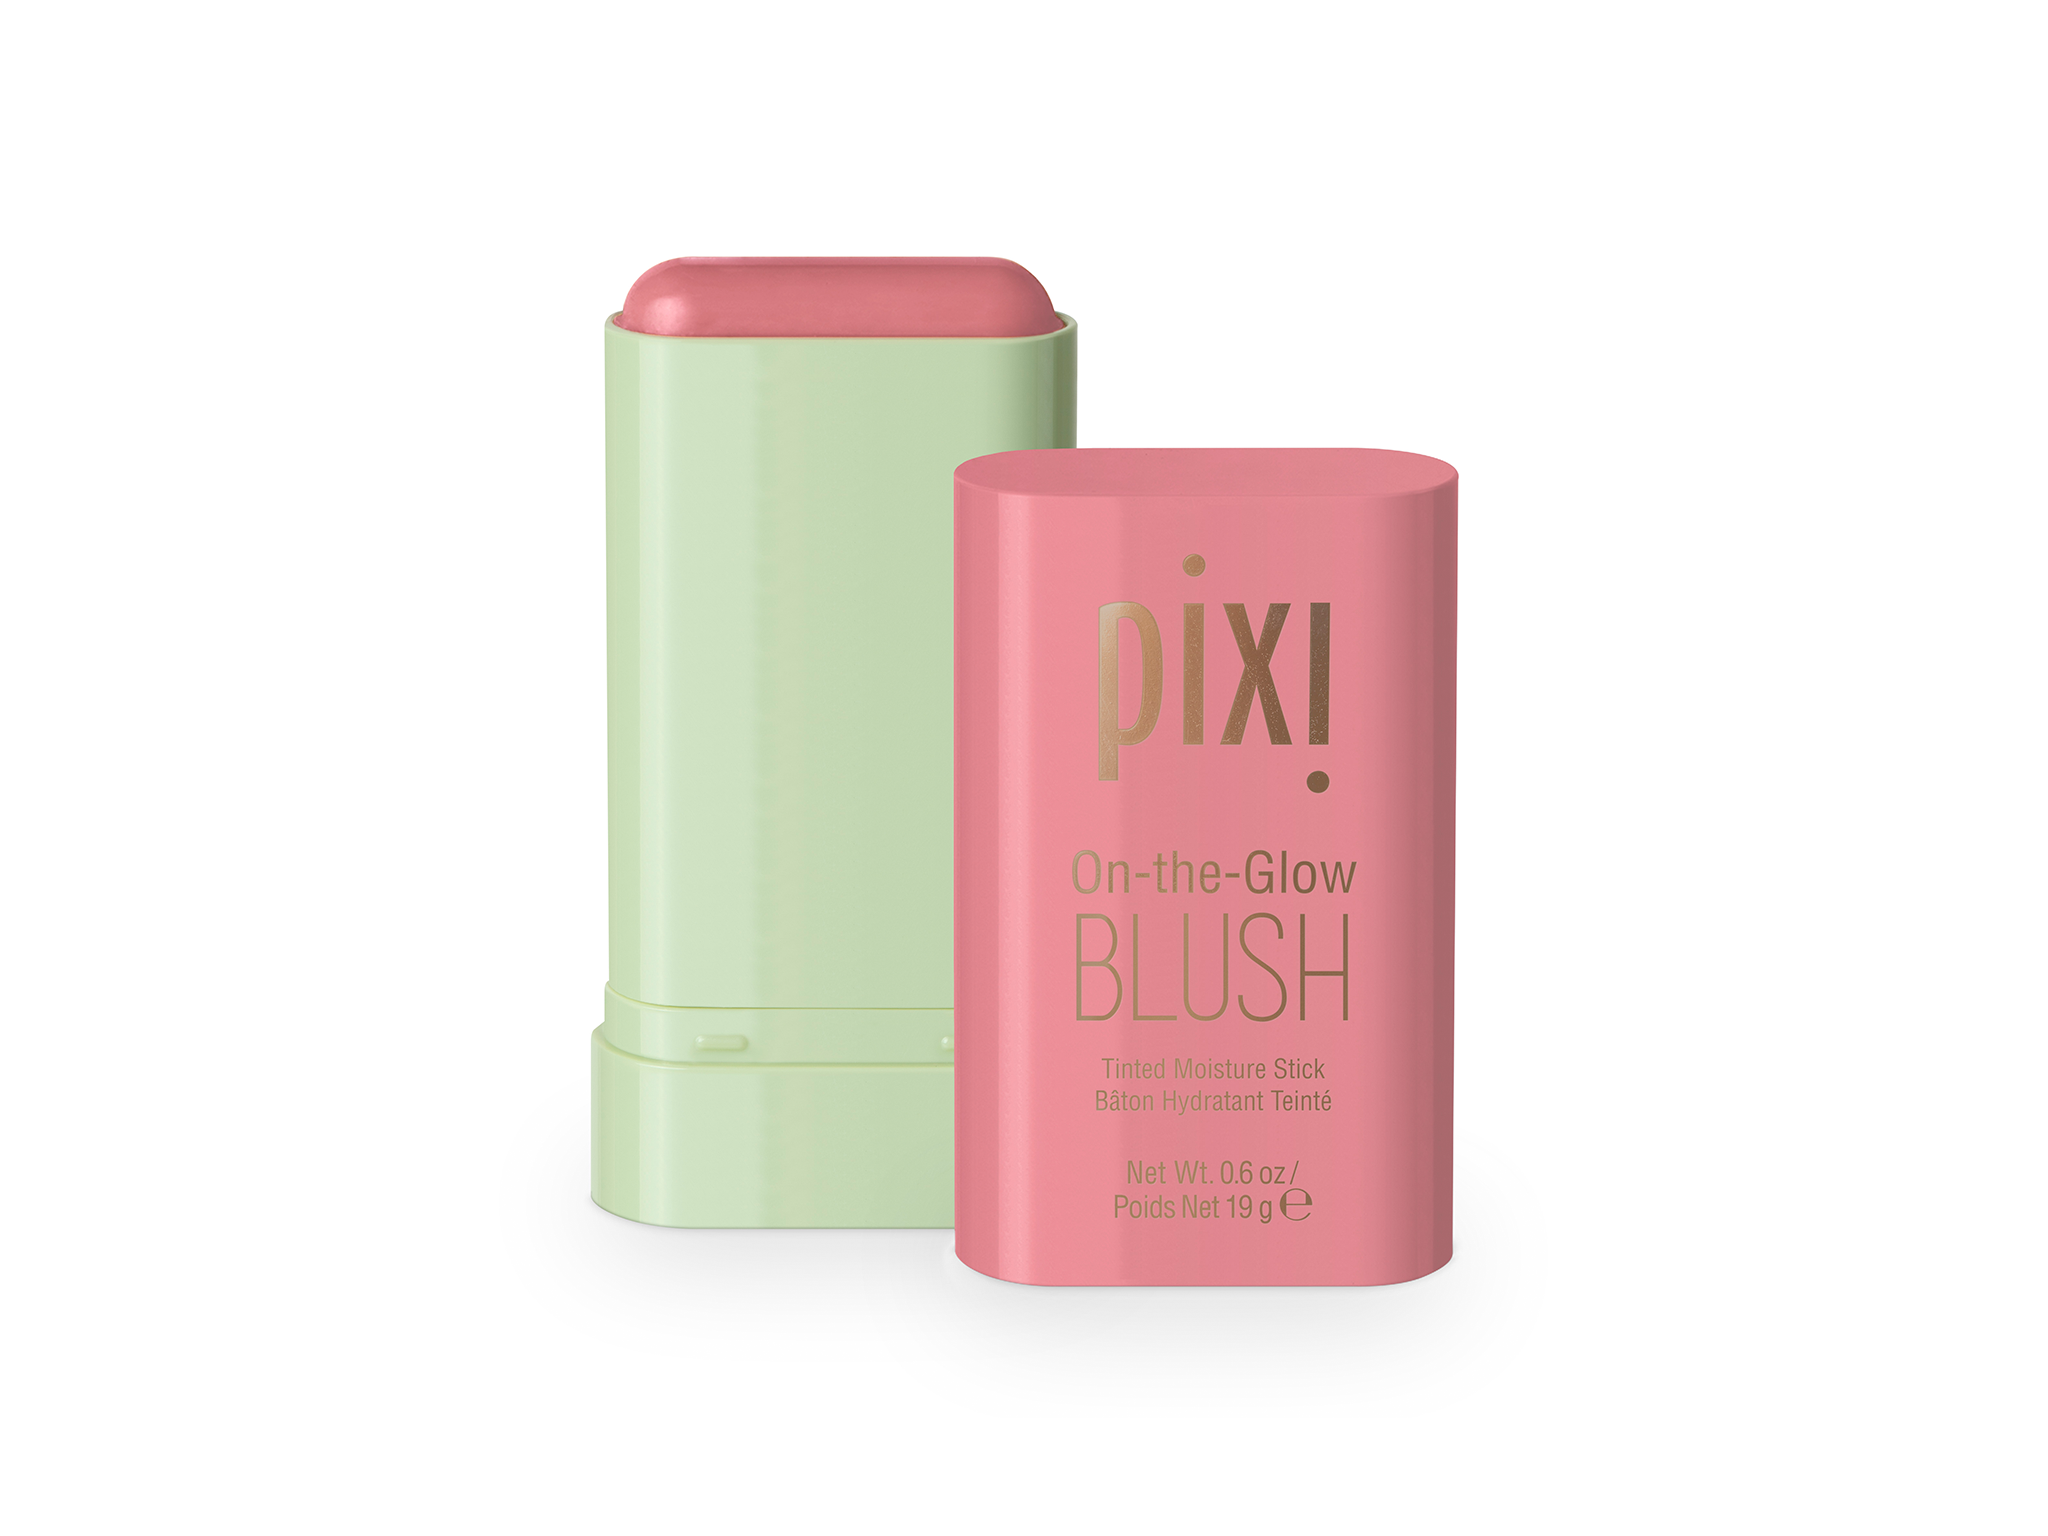 Pixi Beauty on-the-glow blush